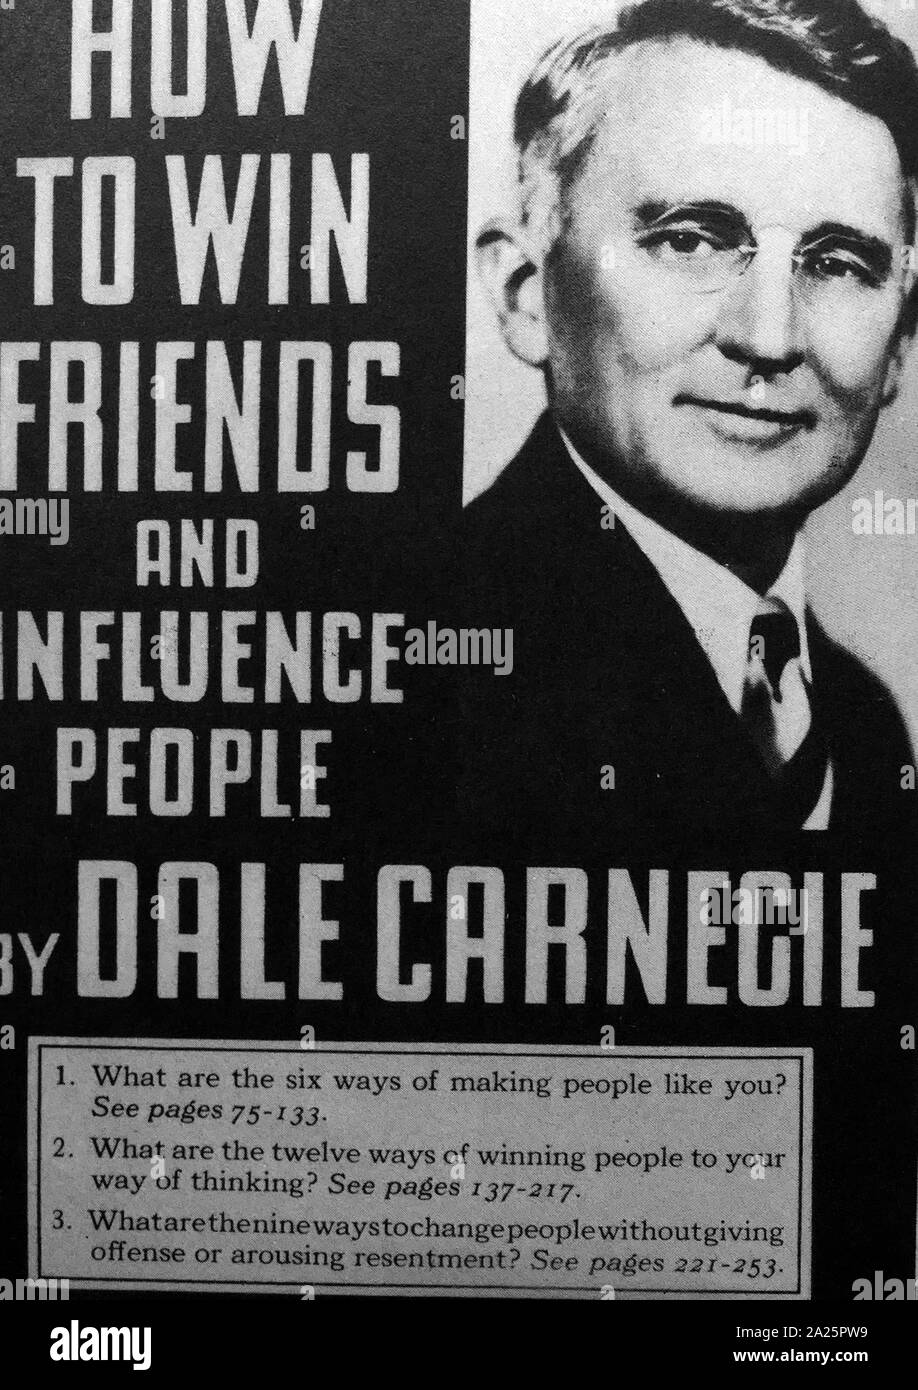 Wie man Freunde gewinnt und Menschen ist ein Buch von Dale Carnegie, 1936 geschrieben. Über 15 Millionen Exemplare weltweit verkauft und ist damit einer der meistverkauften Bücher aller Zeiten. Stockfoto